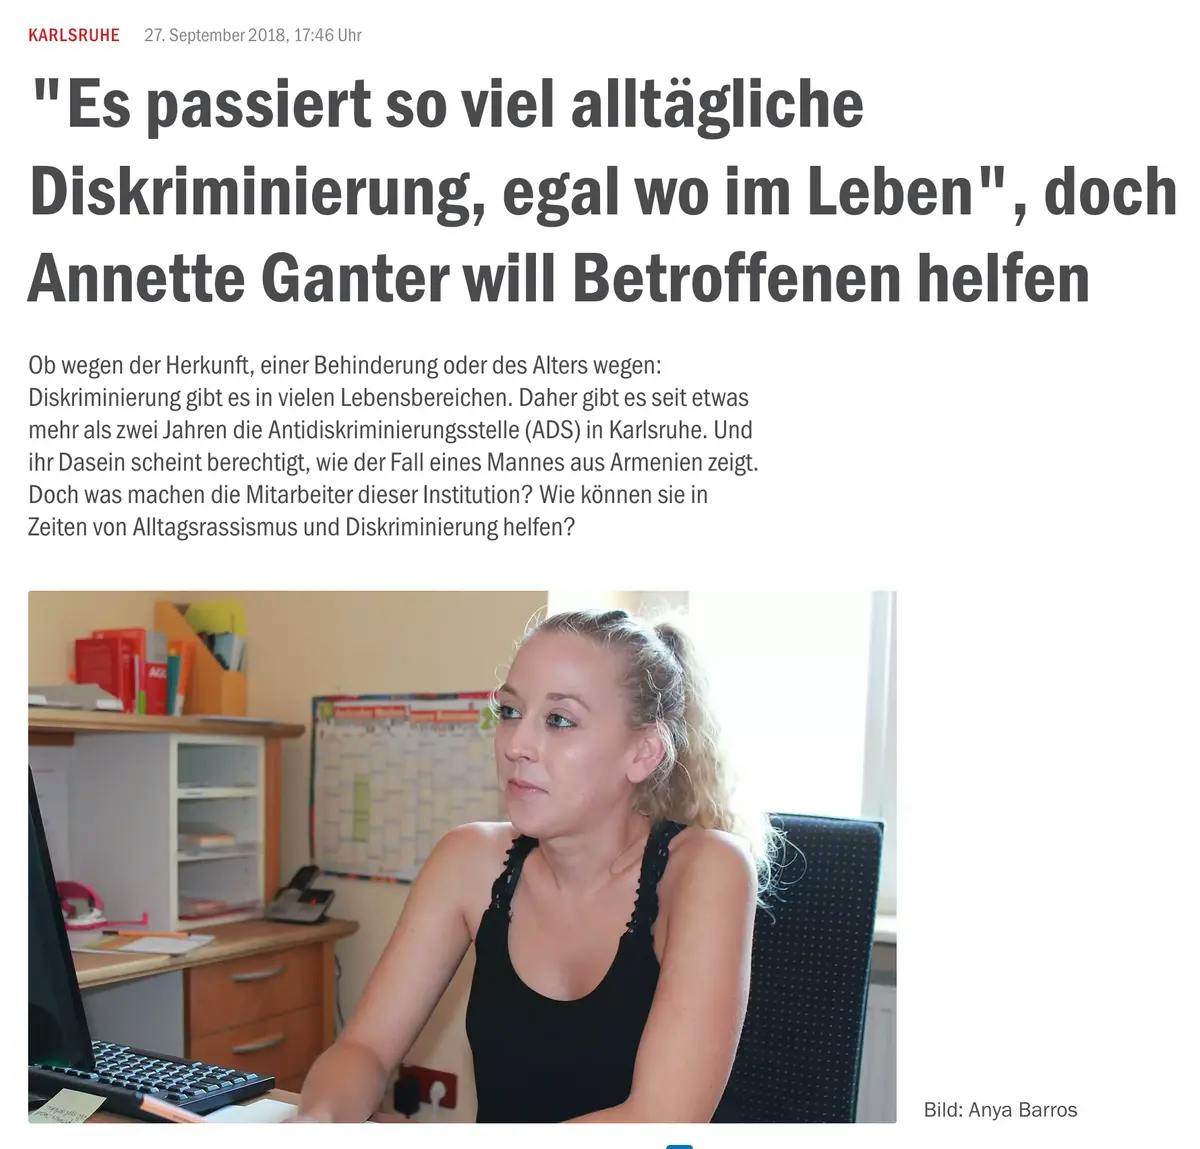 Ein Bildschirmfoto von einem Artikel. Dargestellt wird ein Foto Anette Ganter im Büru der Antidiskriminierungsstelle Karlsruhe und darüber steht Überschrift: "Es passiert so viel alltägliche Diskriminierung, egal wo im leben", doch Annette Ganter will betroffenen helfen.